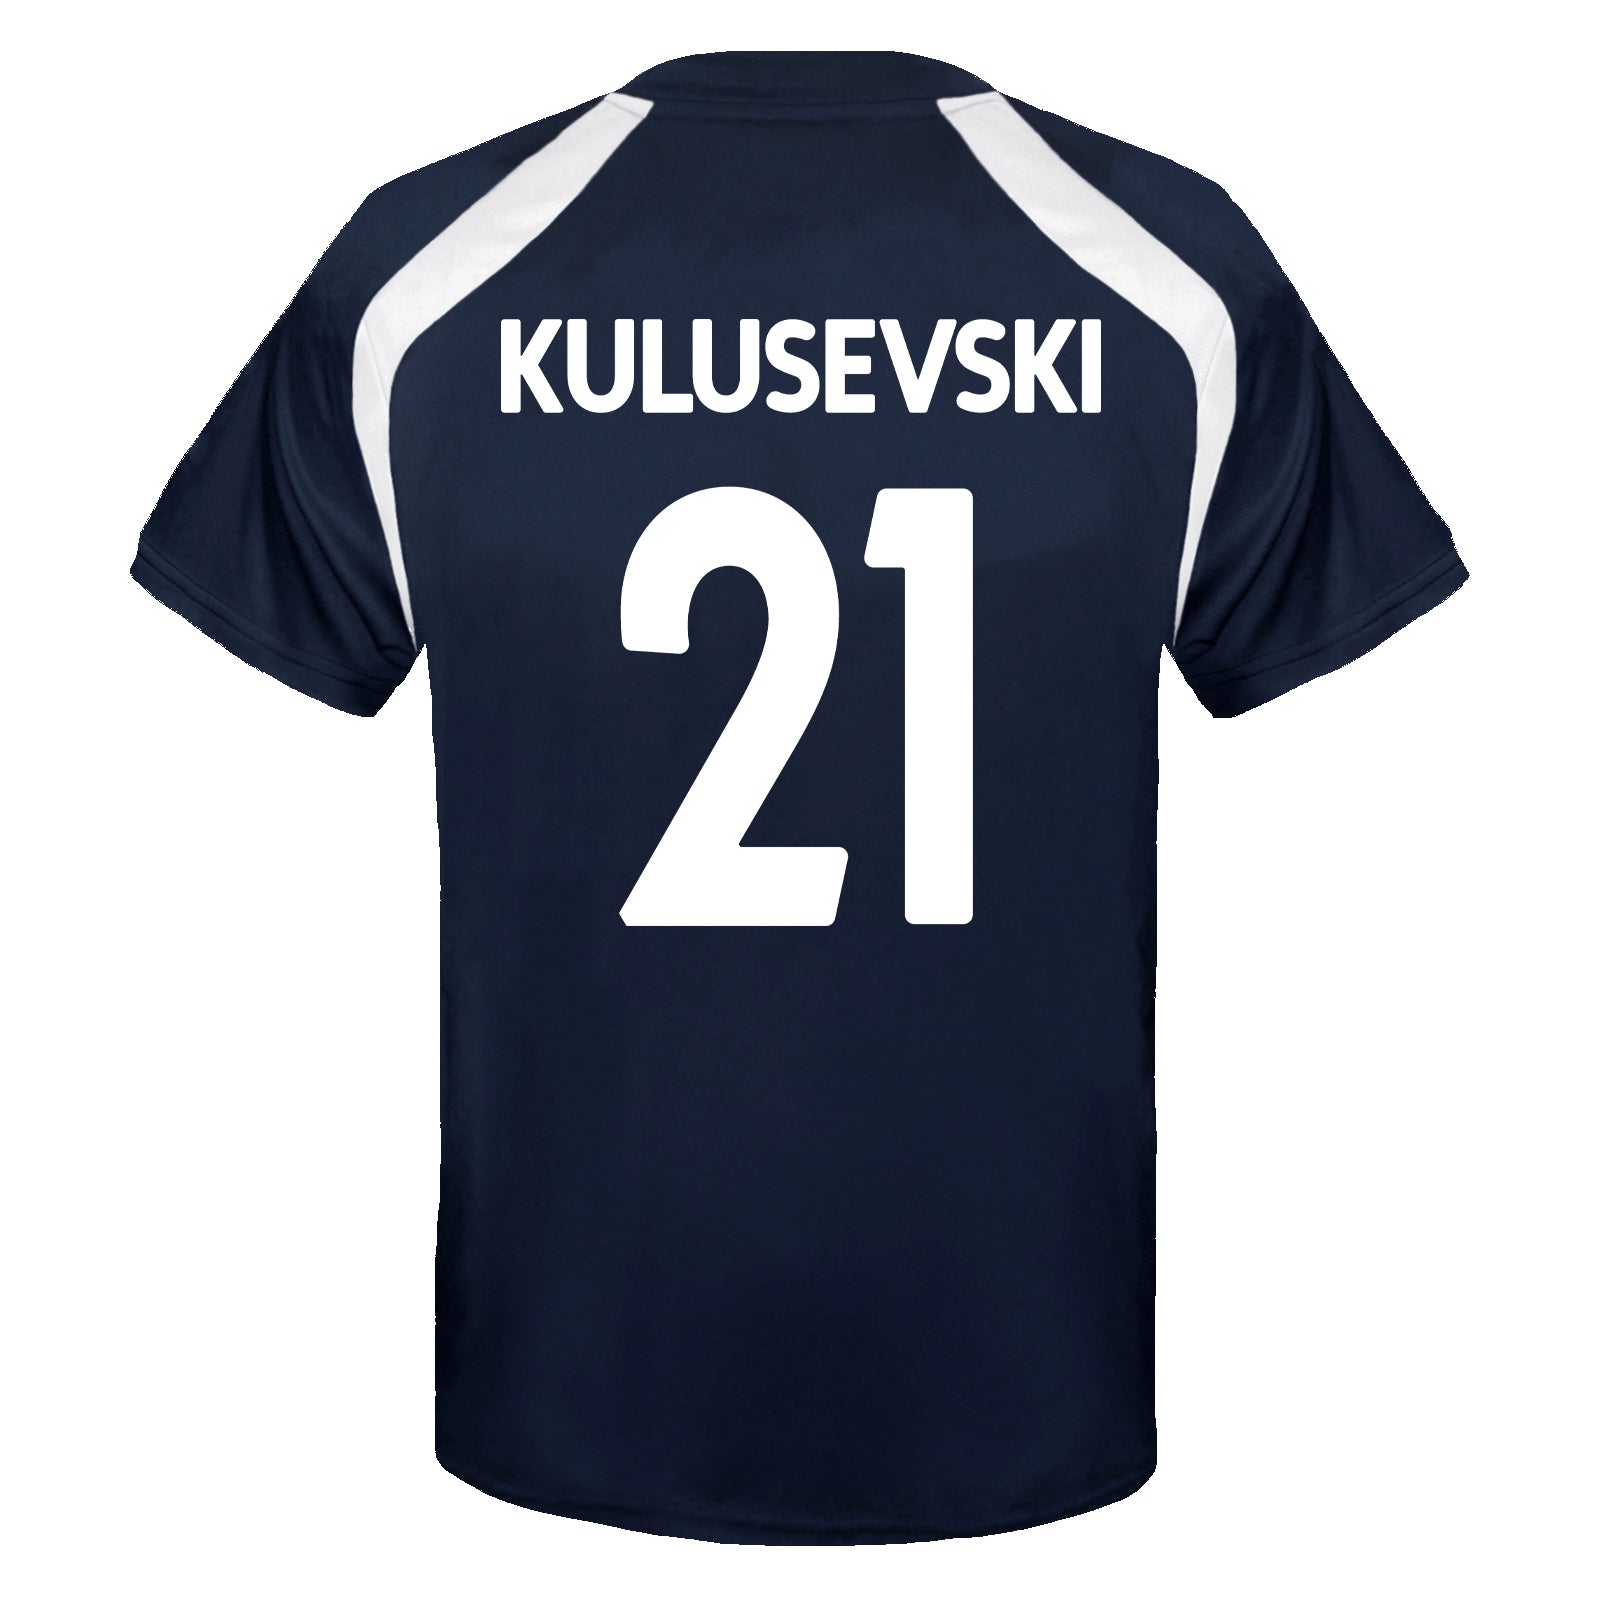 Navy Kulusevski